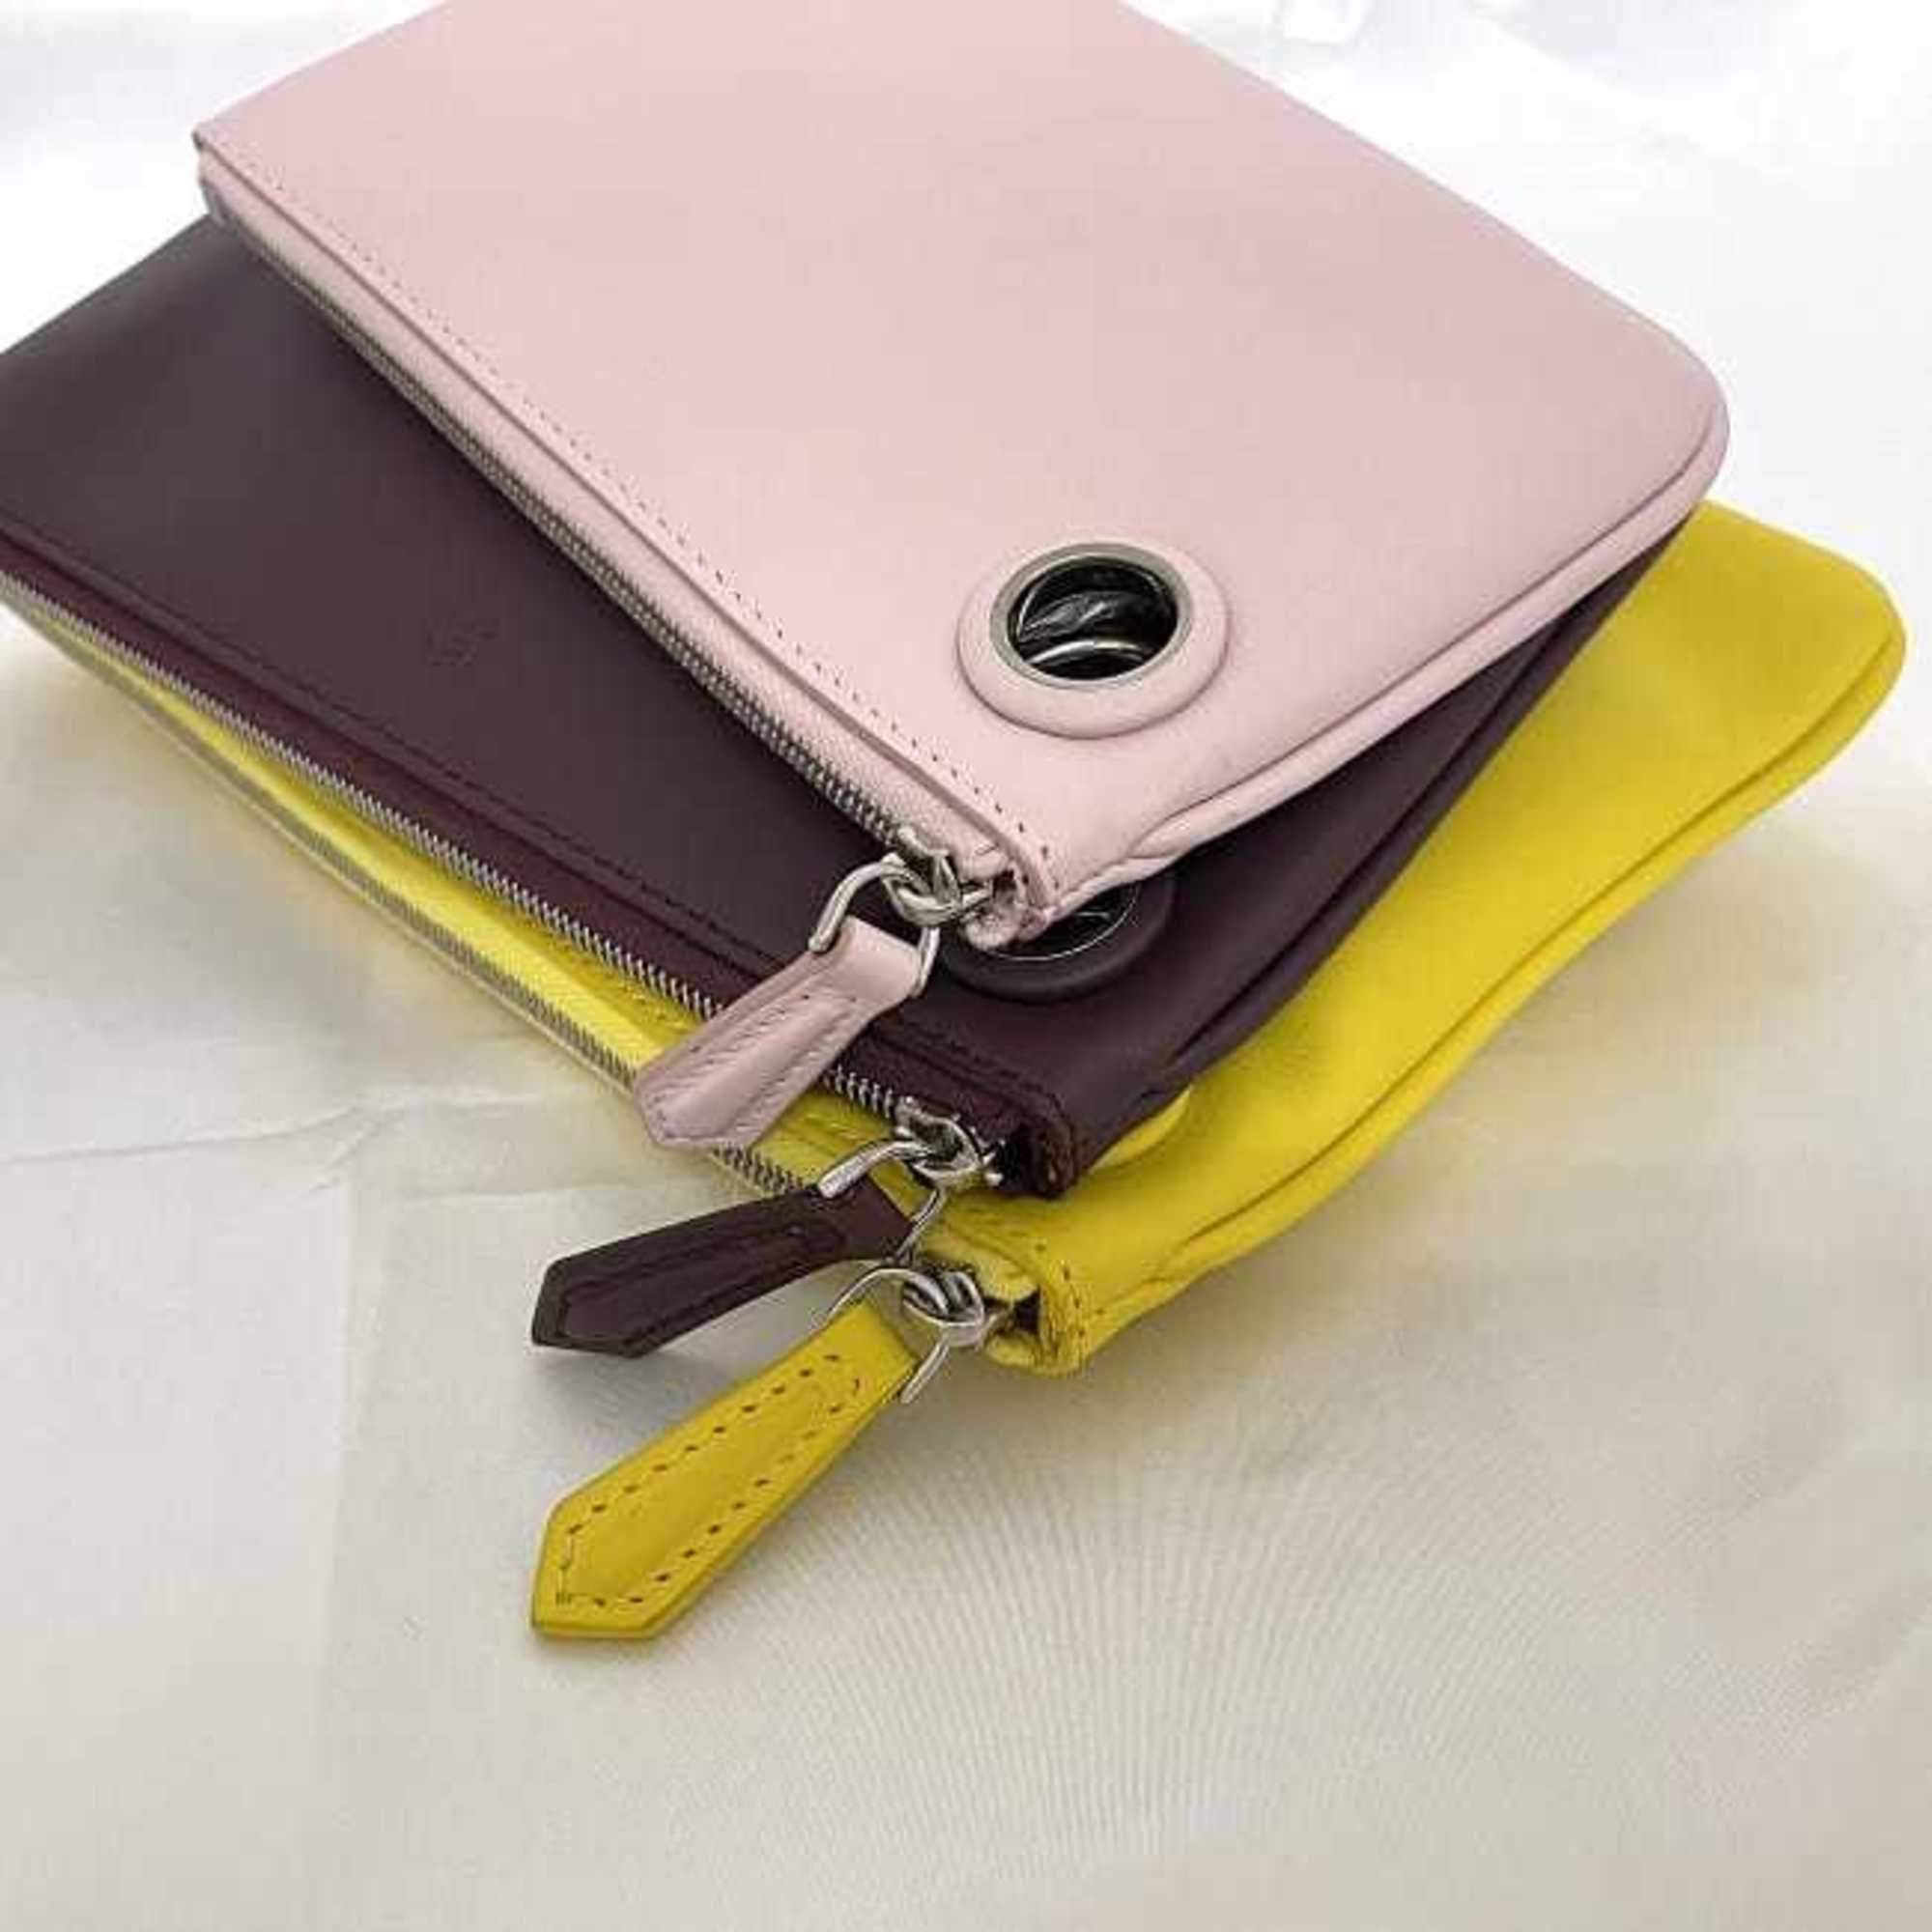 FENDI Clutch Bag Triplet Pouch Pink Bordeaux Yellow 8BS001 ec-19958 Handbag Leather F's Compact Ladies